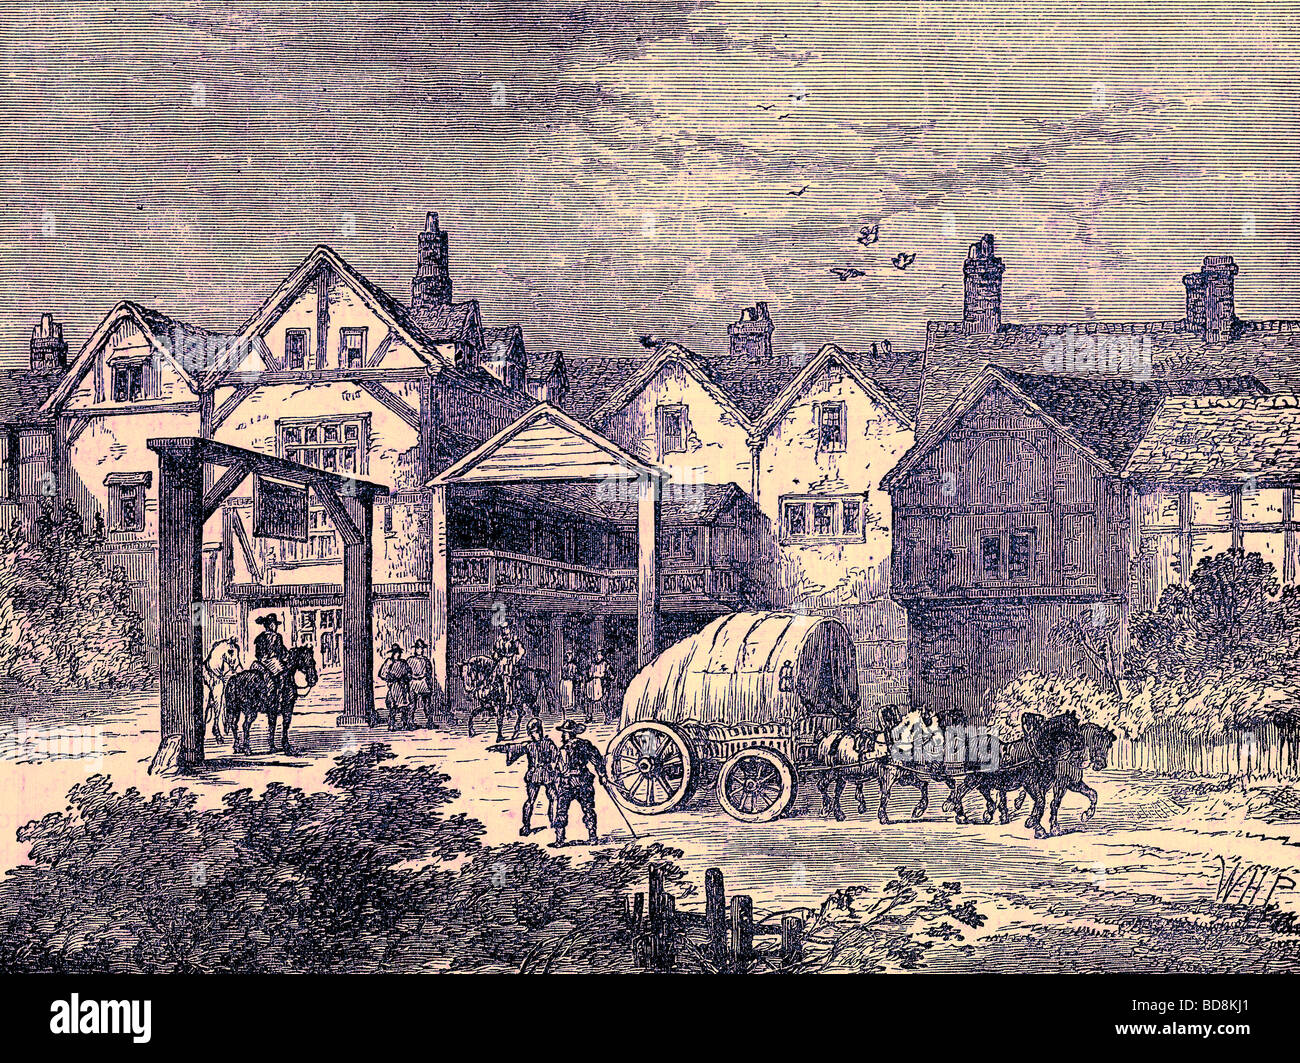 Le vieux Tabard Inn dans le dix-septième siècle Illustration de l'Ancien et du nouveau Londres par Edward Walford Cassell c 1880 Banque D'Images